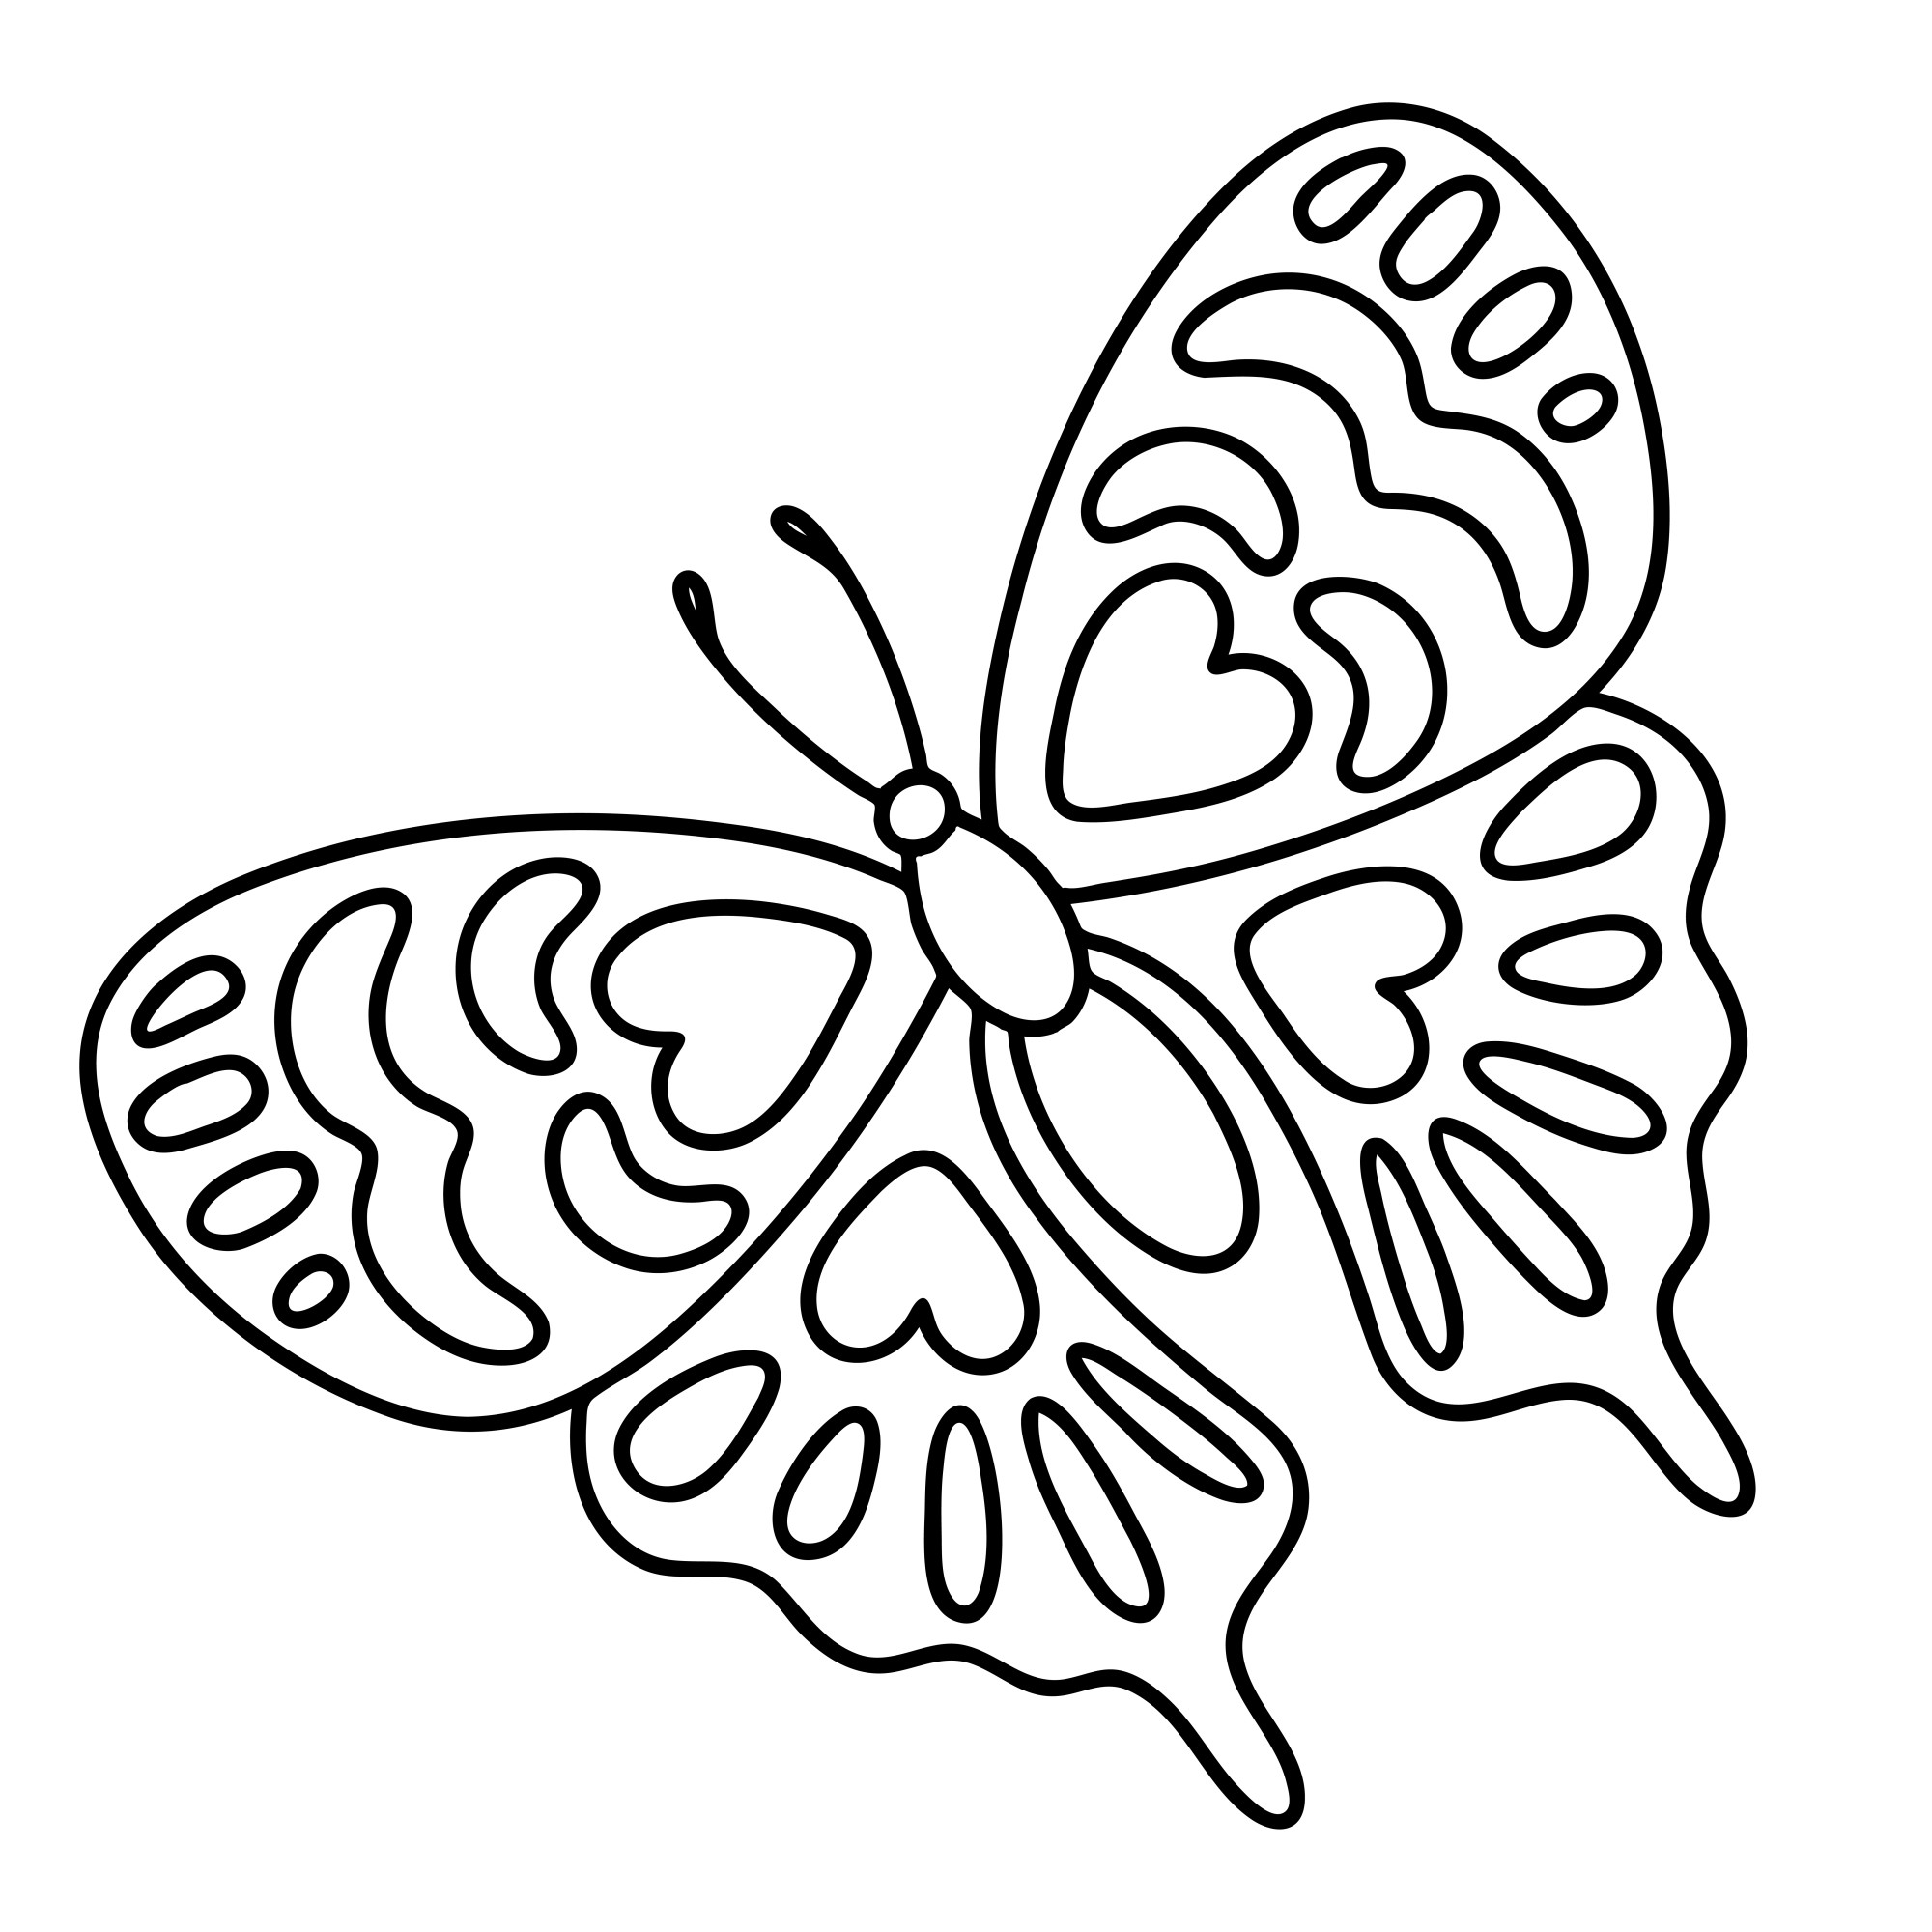 Раскраска для детей: красивый контур бабочки